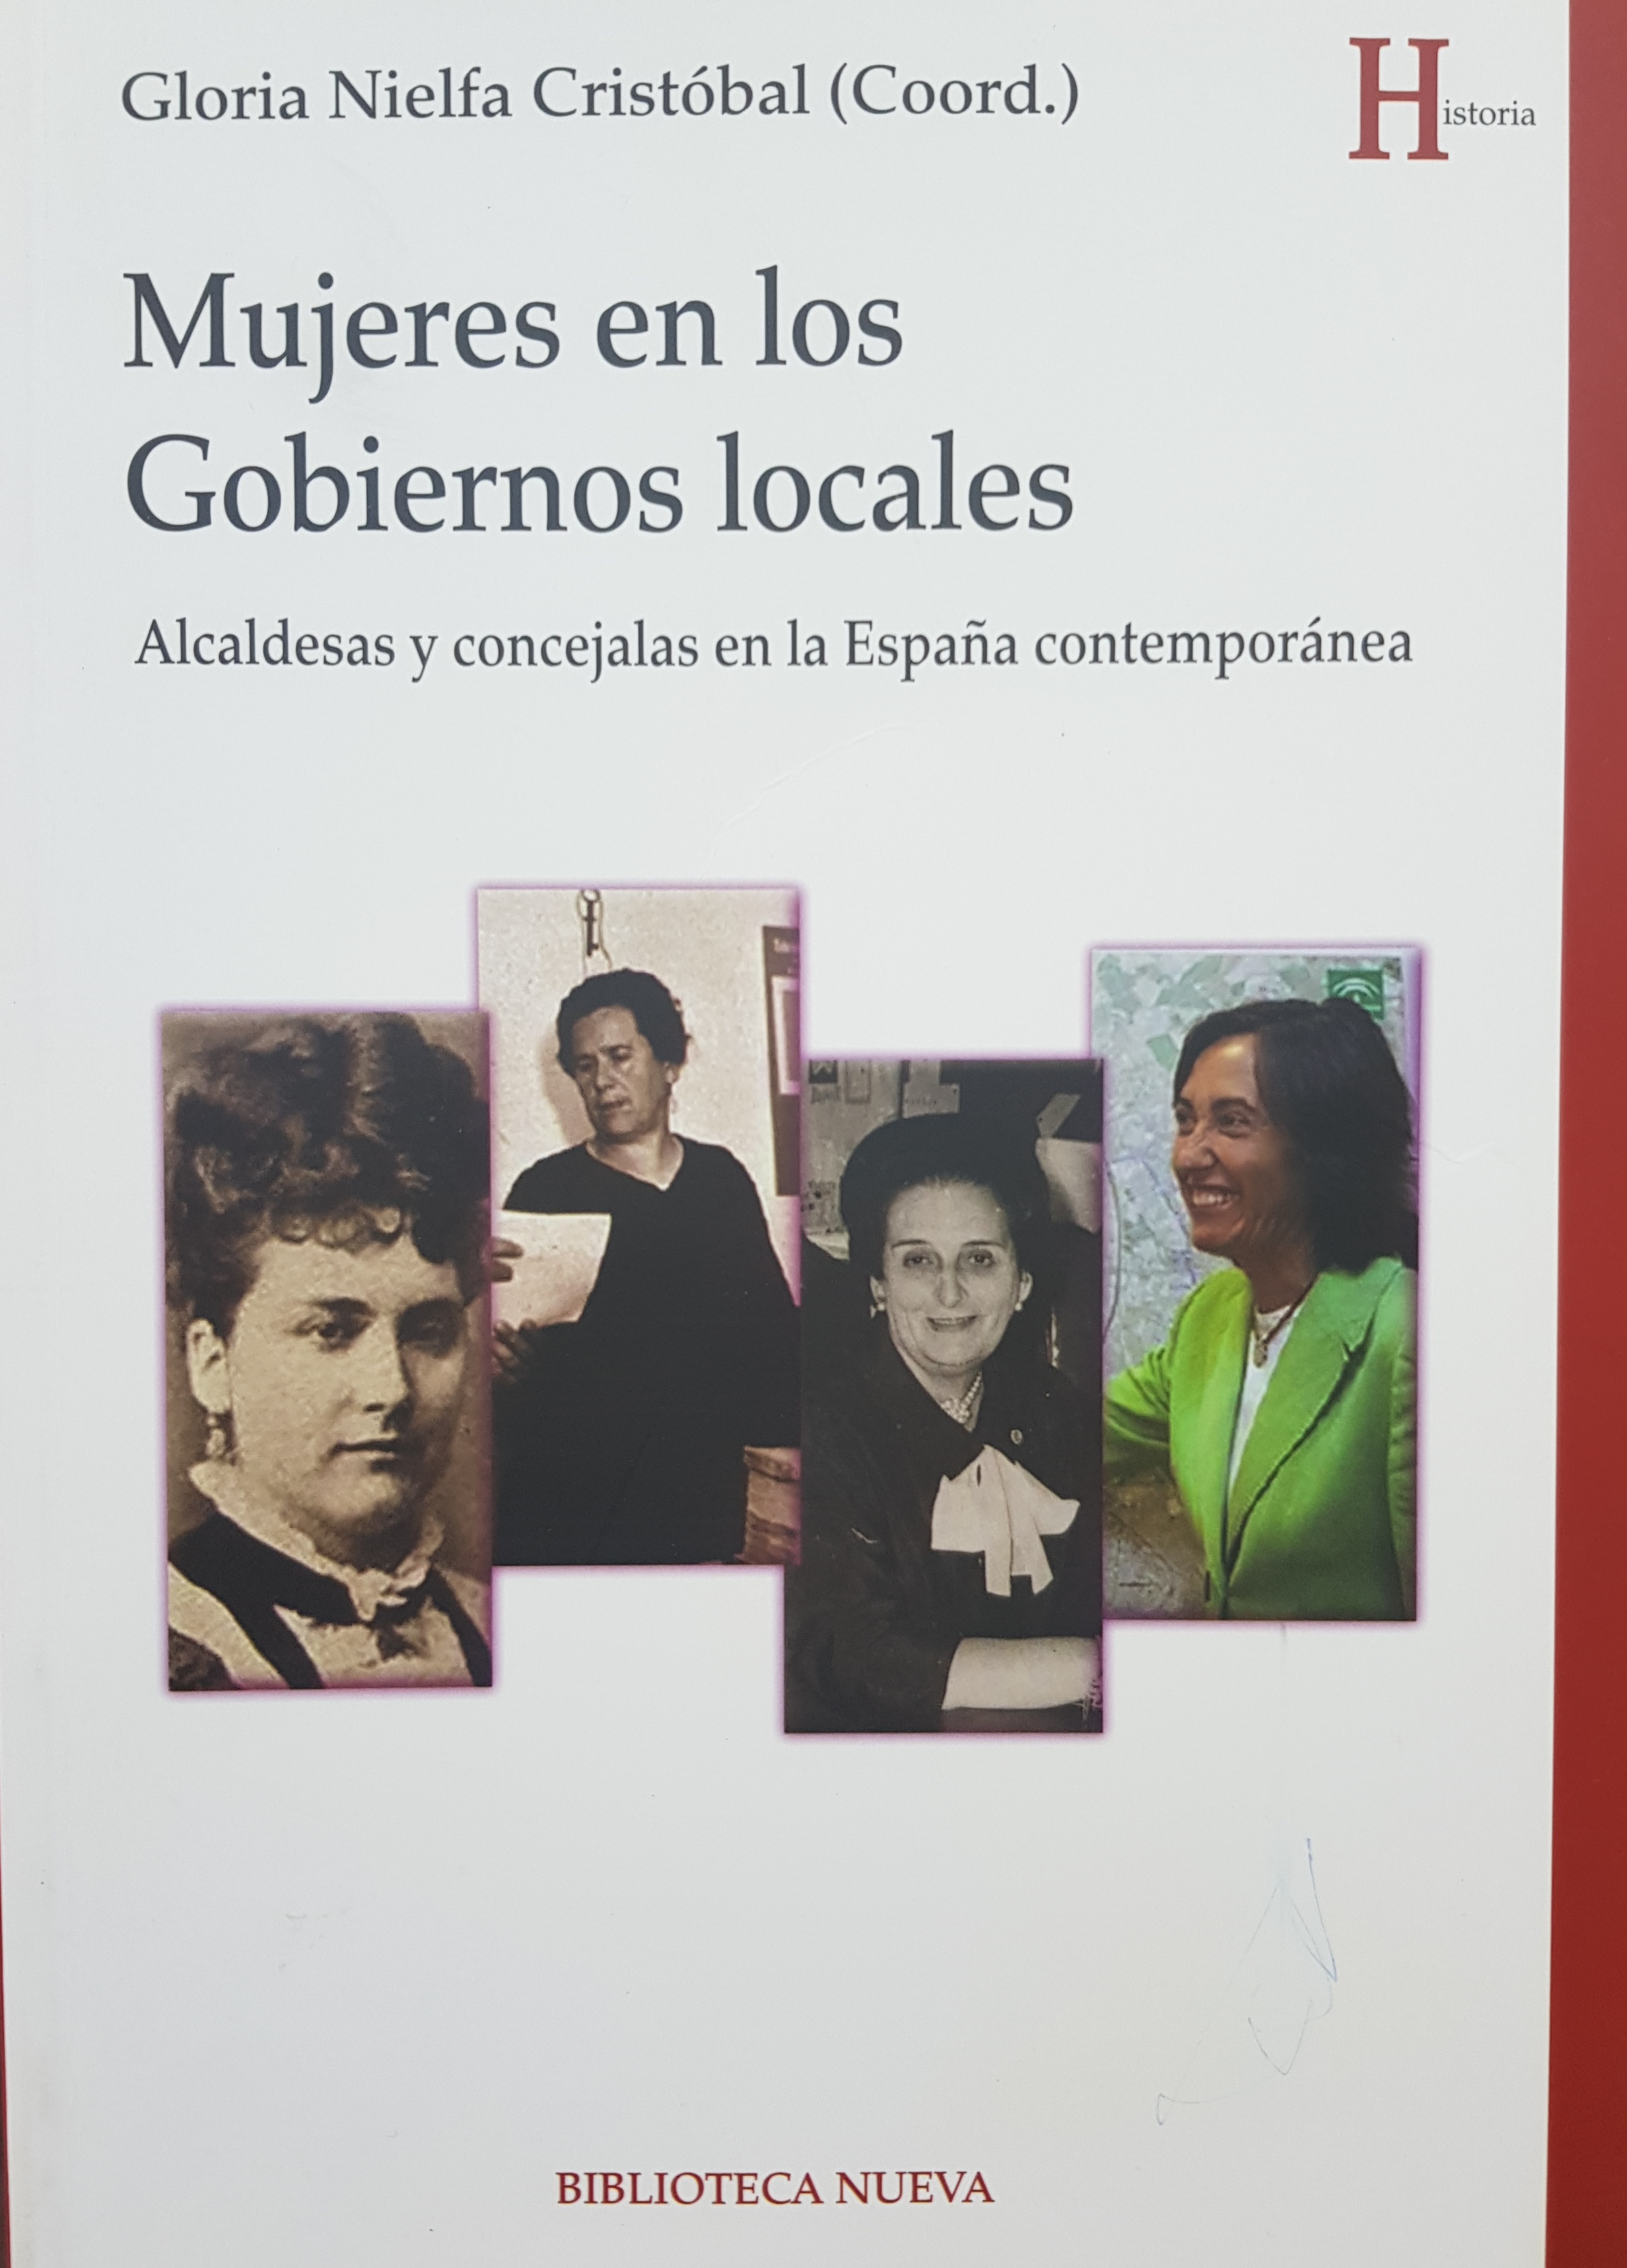 Consulta nuestro libro: Mujeres en los gobiernos locales: alcaldesas y concejalas en la España contemporánea